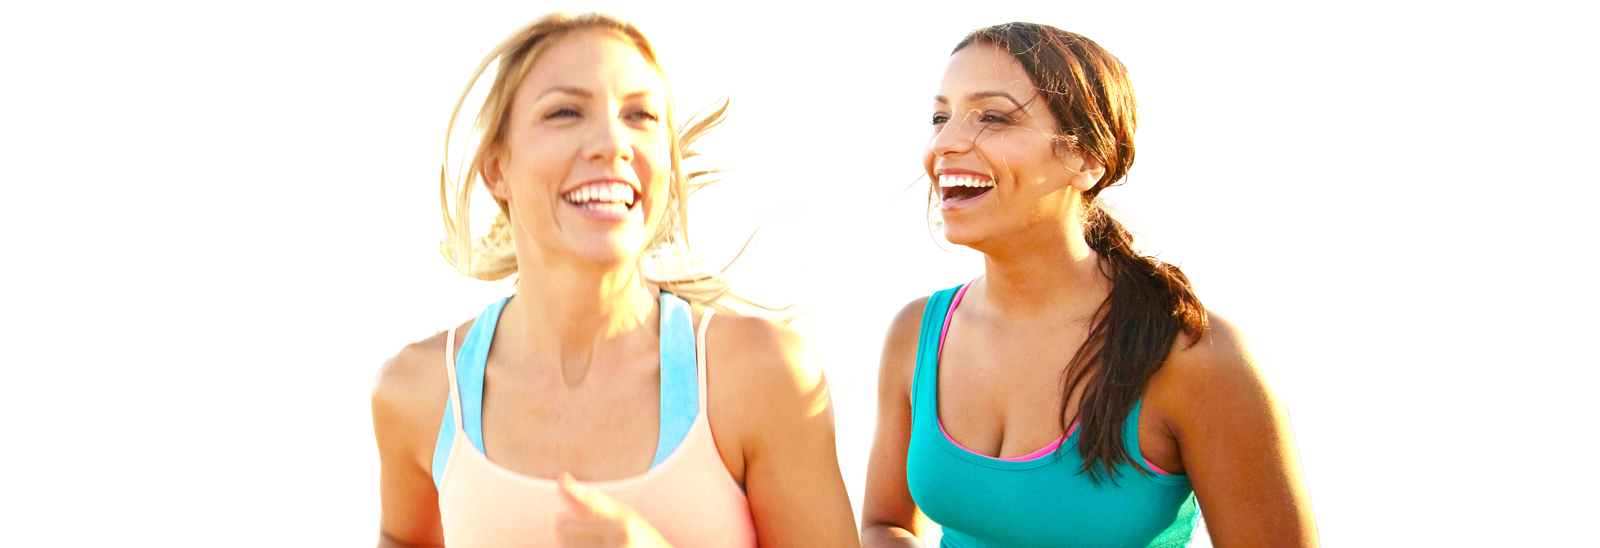 Photo of two women running.